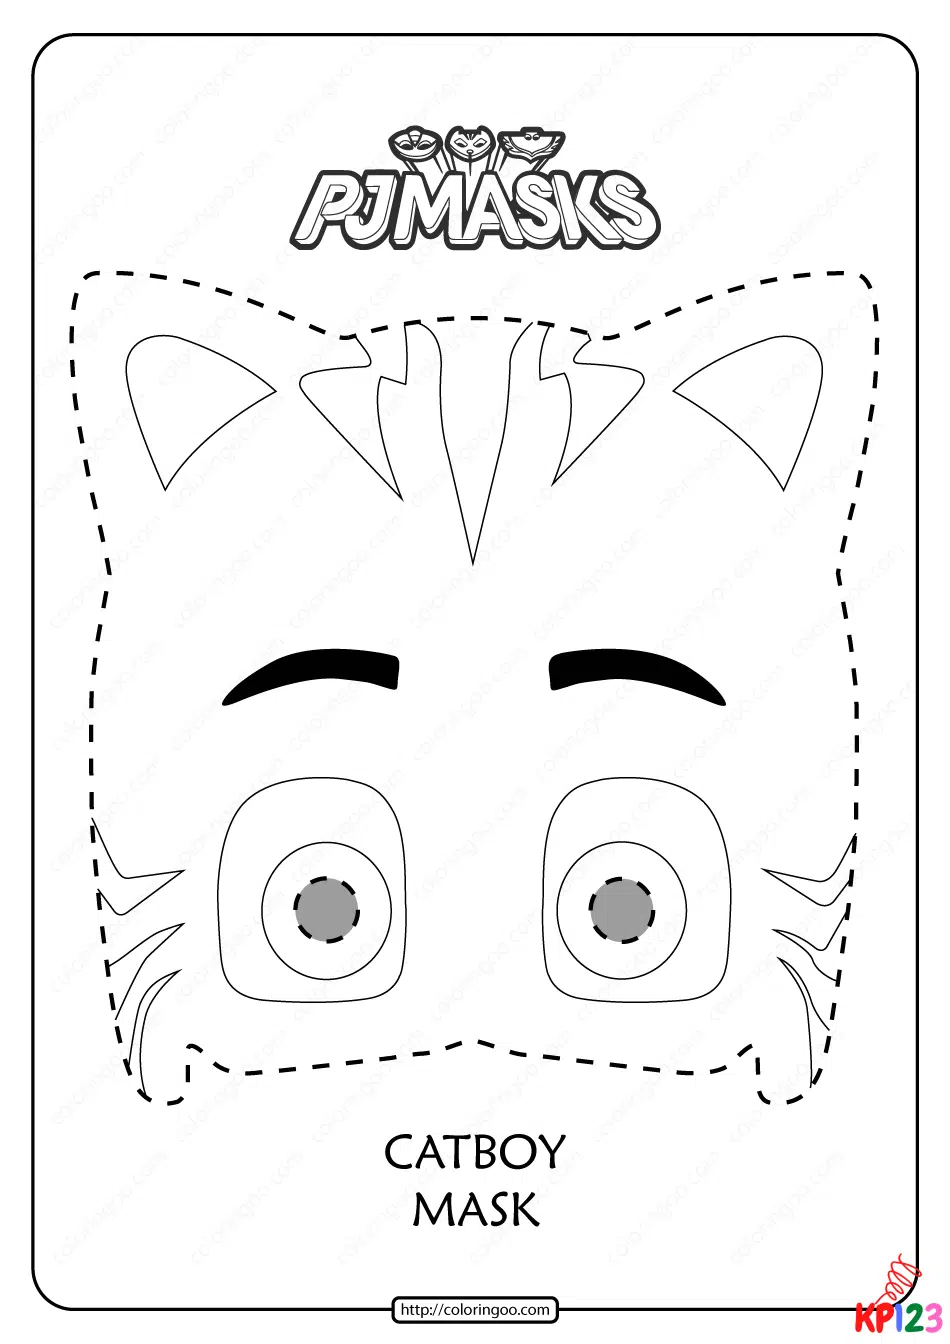 PJ masks 7